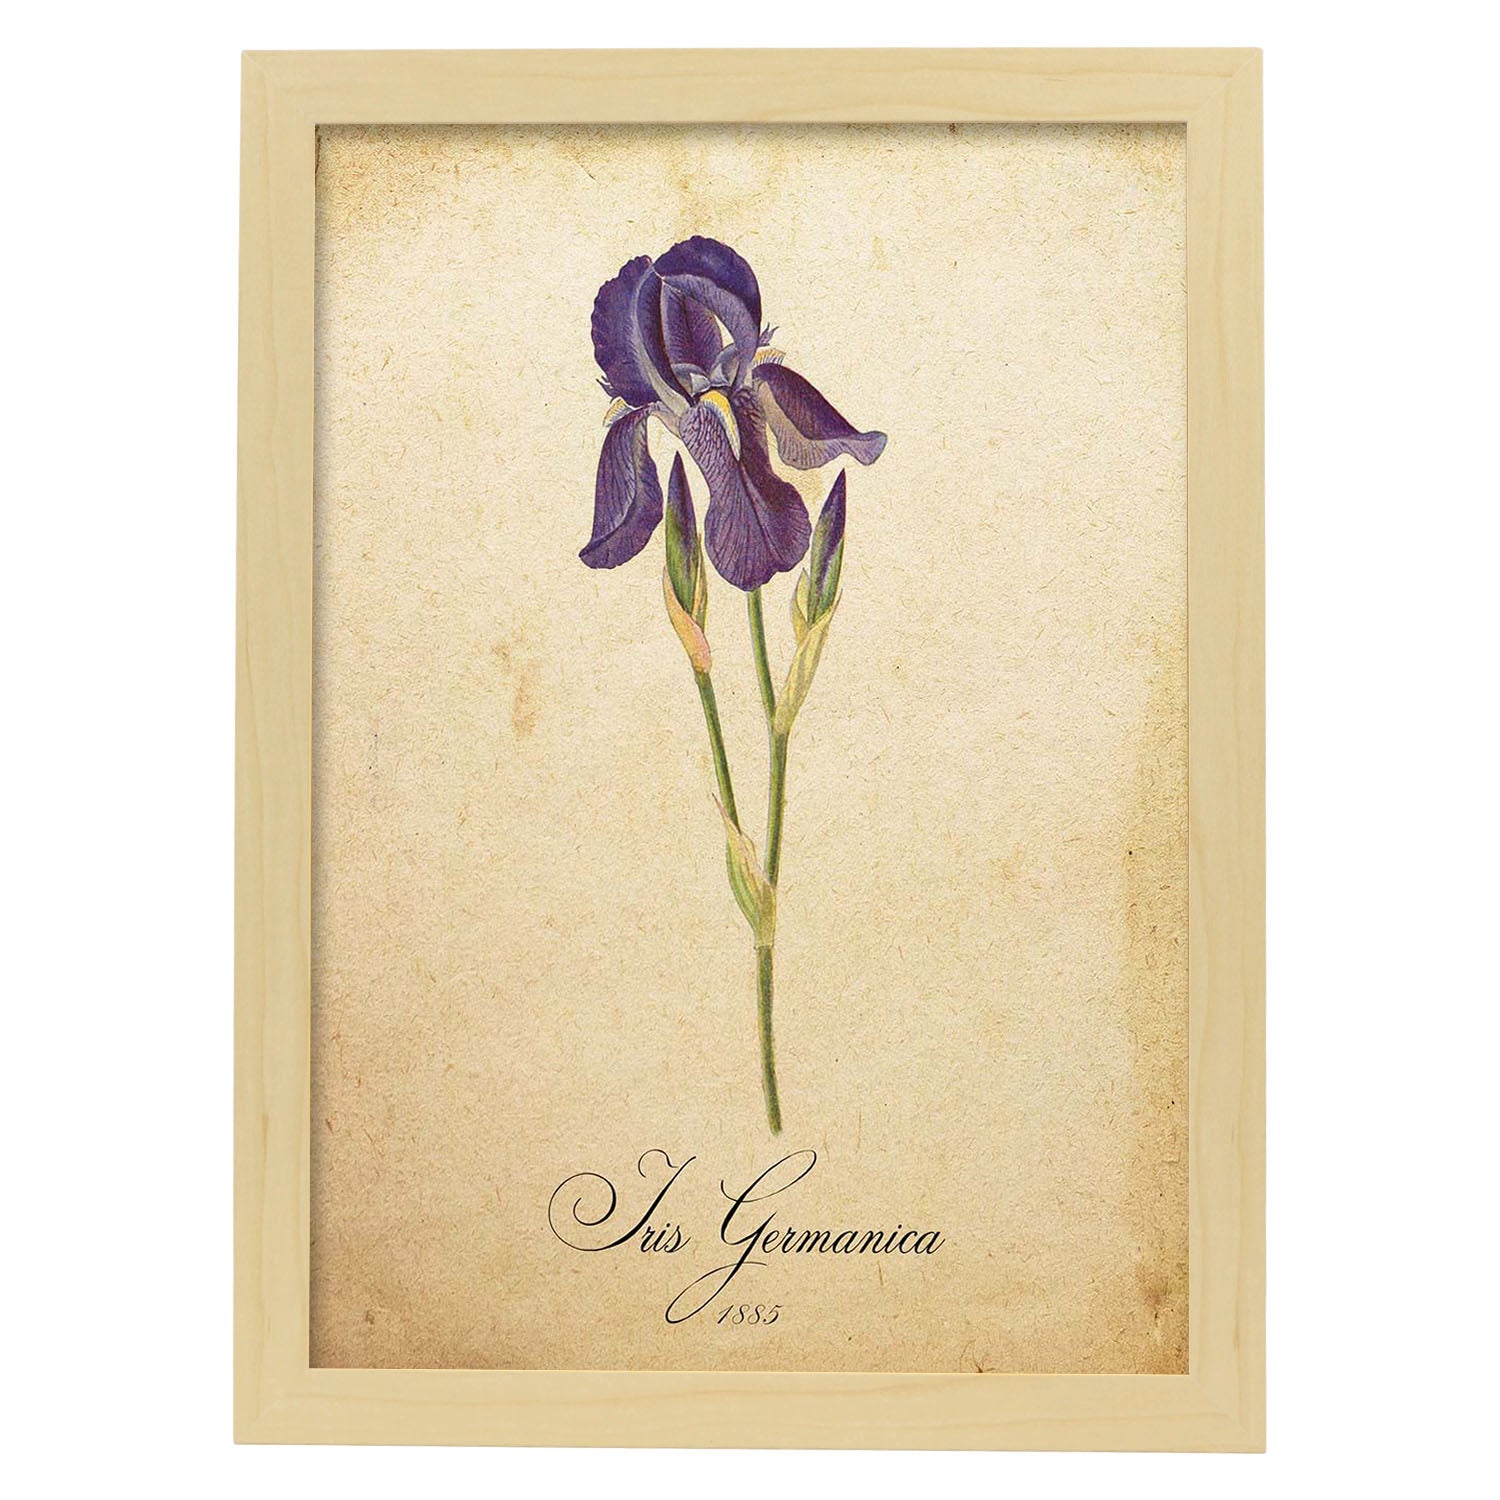 Poster de flores vintage. Lámina Iris germanica con diseño vintage.-Artwork-Nacnic-A4-Marco Madera clara-Nacnic Estudio SL